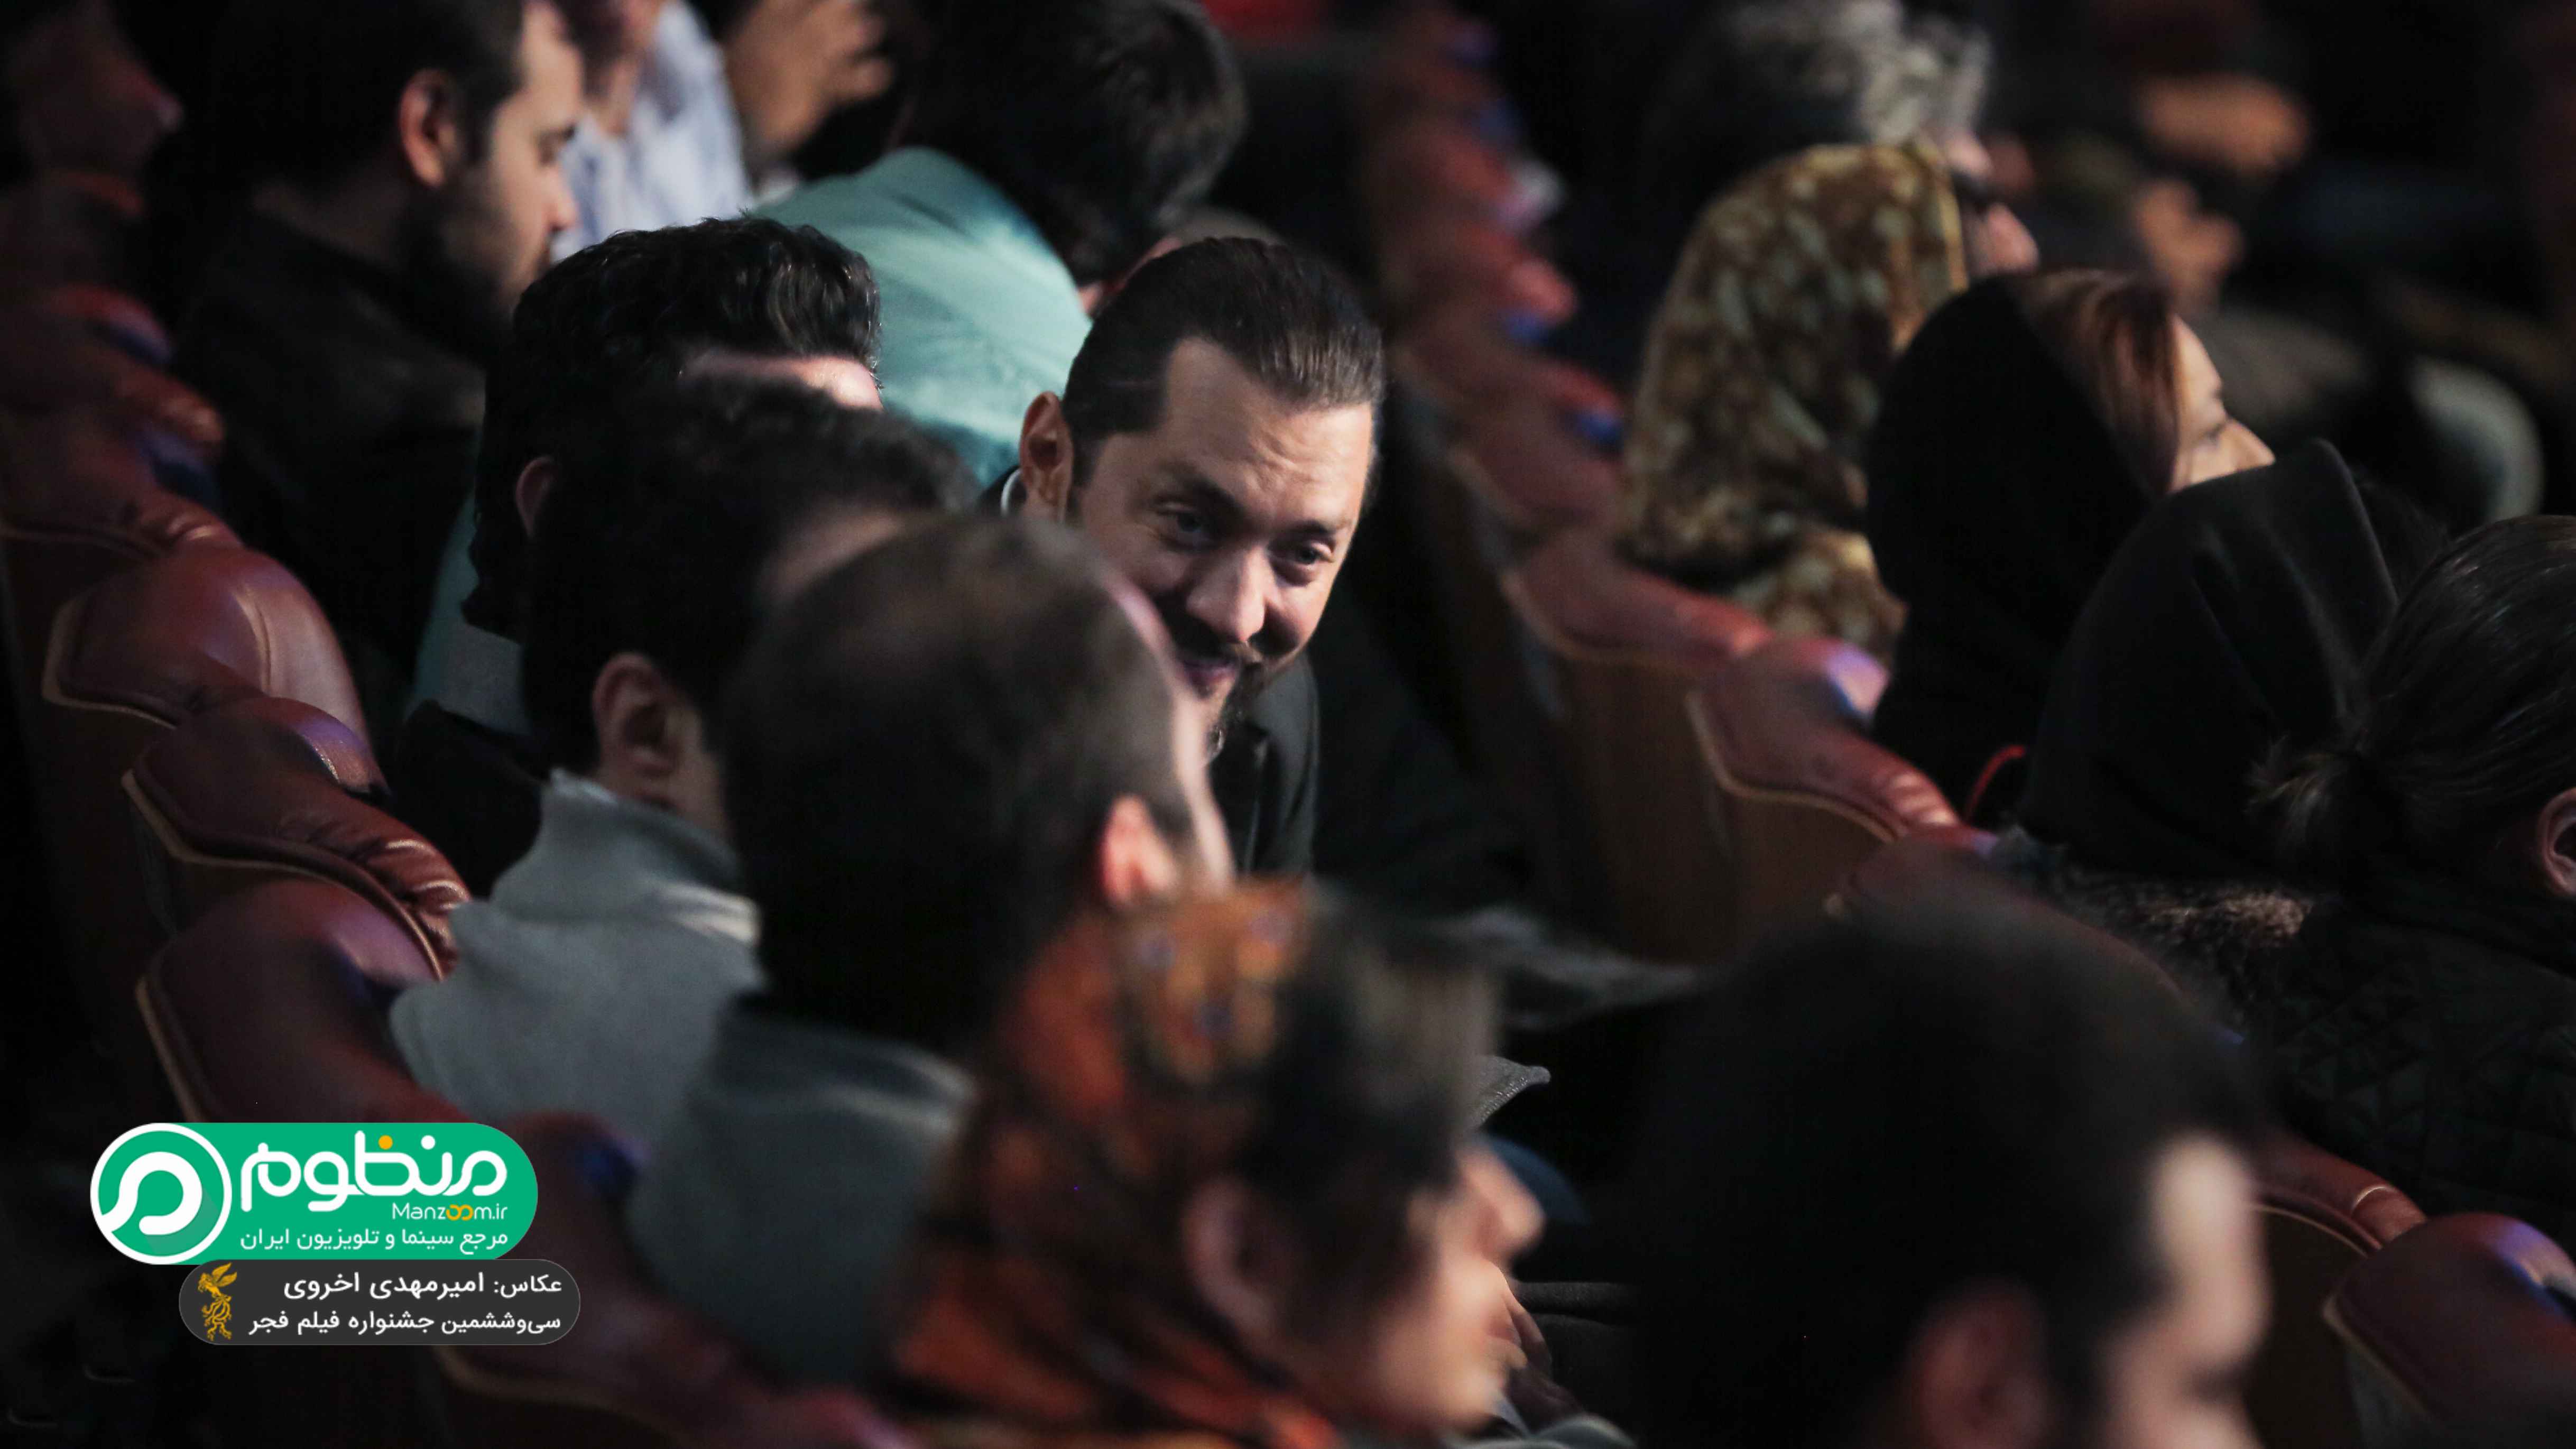 بهرام رادان، بازیگر و تهیه کننده سینما و تلویزیون - عکس جشنواره